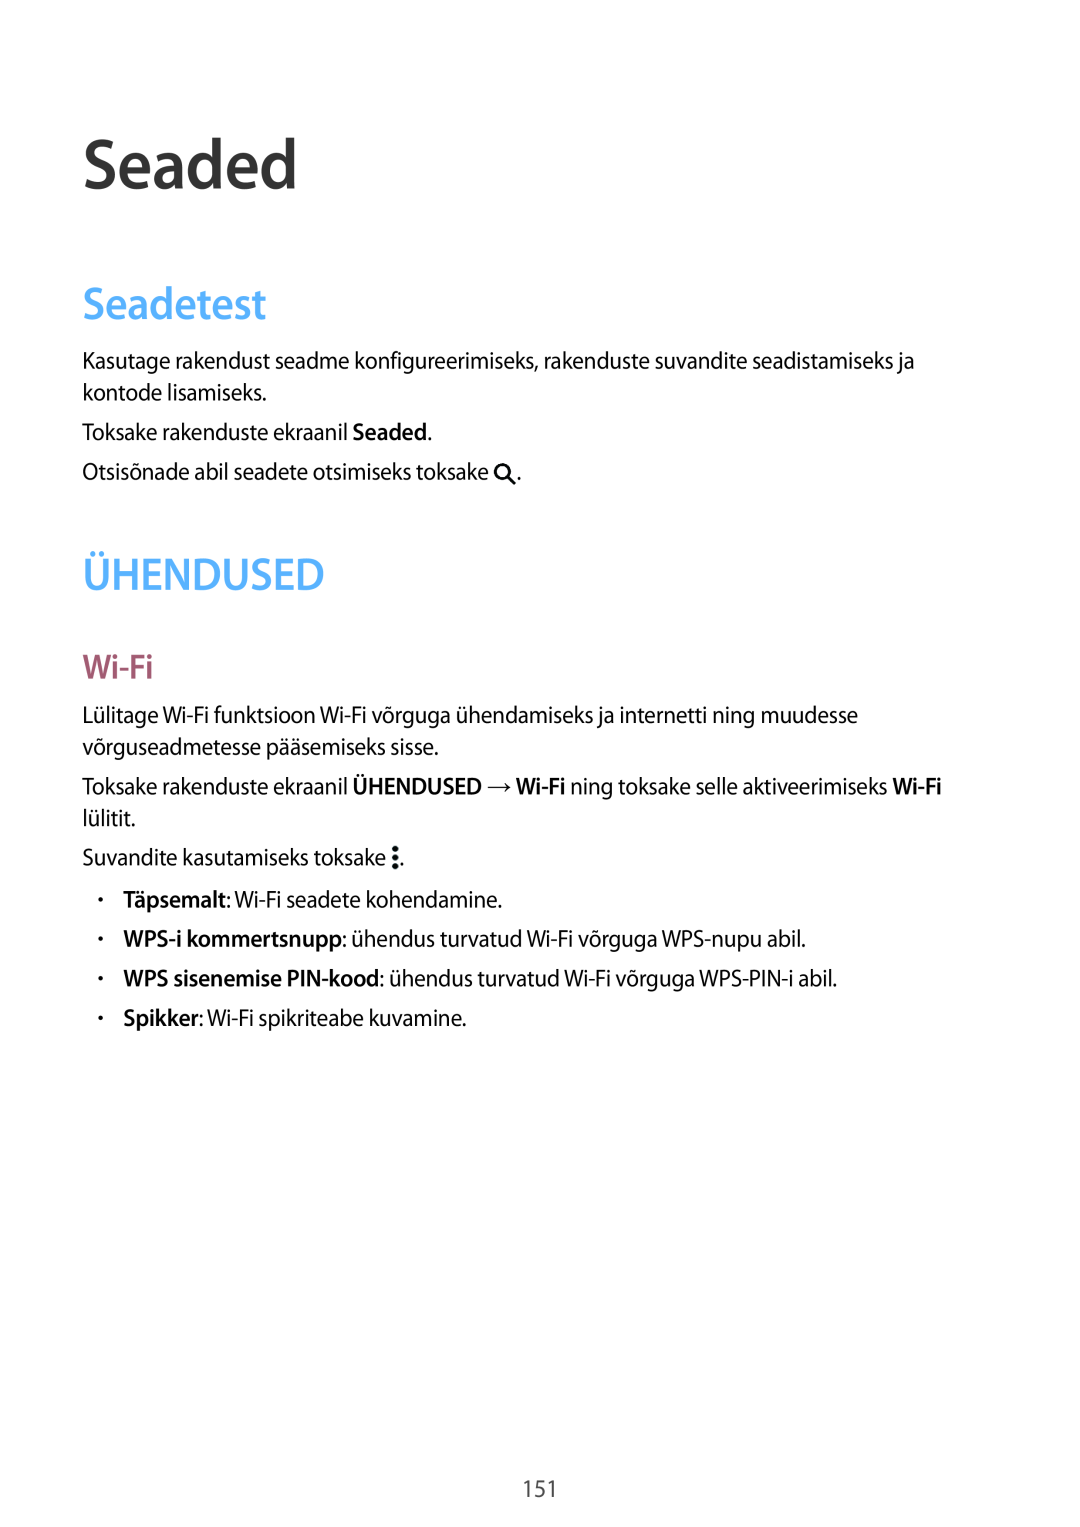 Samsung SM-T700NTSASEB, SM-T700NZWASEB manual Seaded, Seadetest, Ühendused, Wi-Fi 